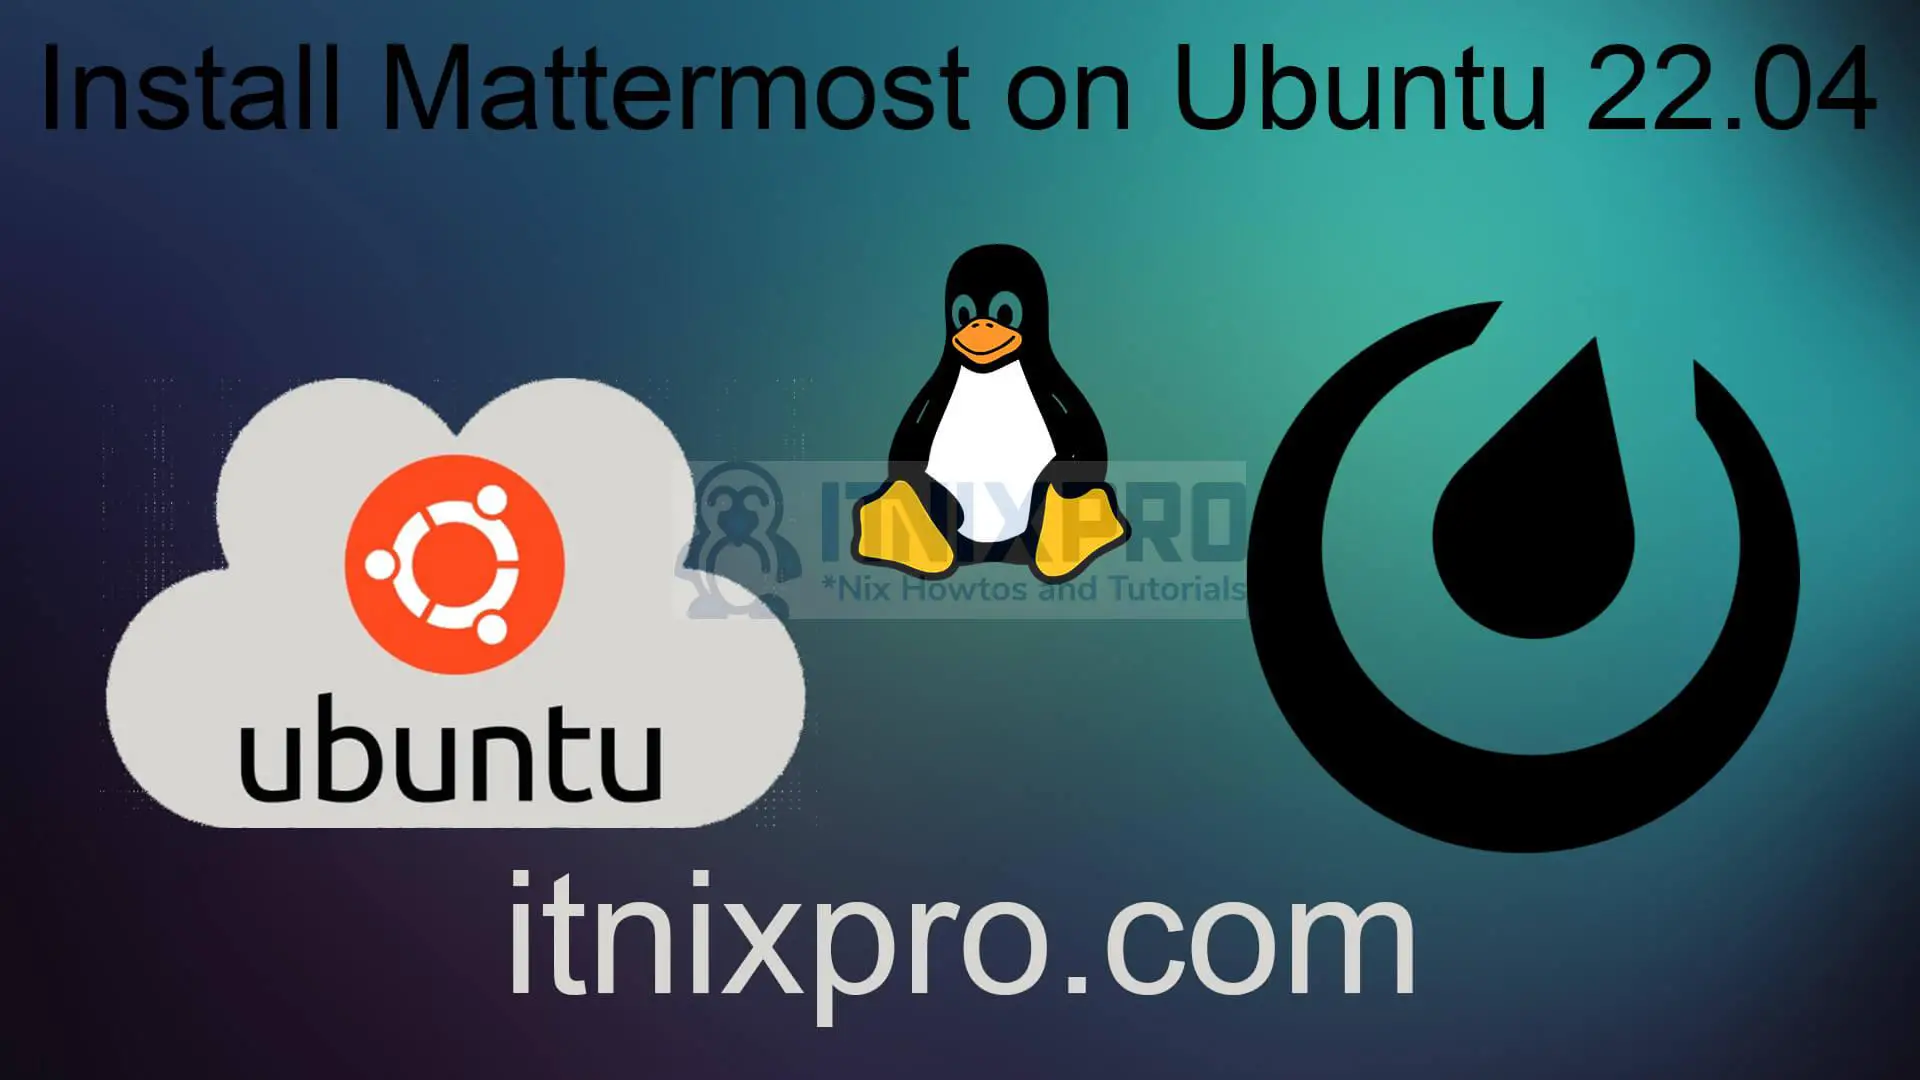 Install Mattermost on Ubuntu 22.04